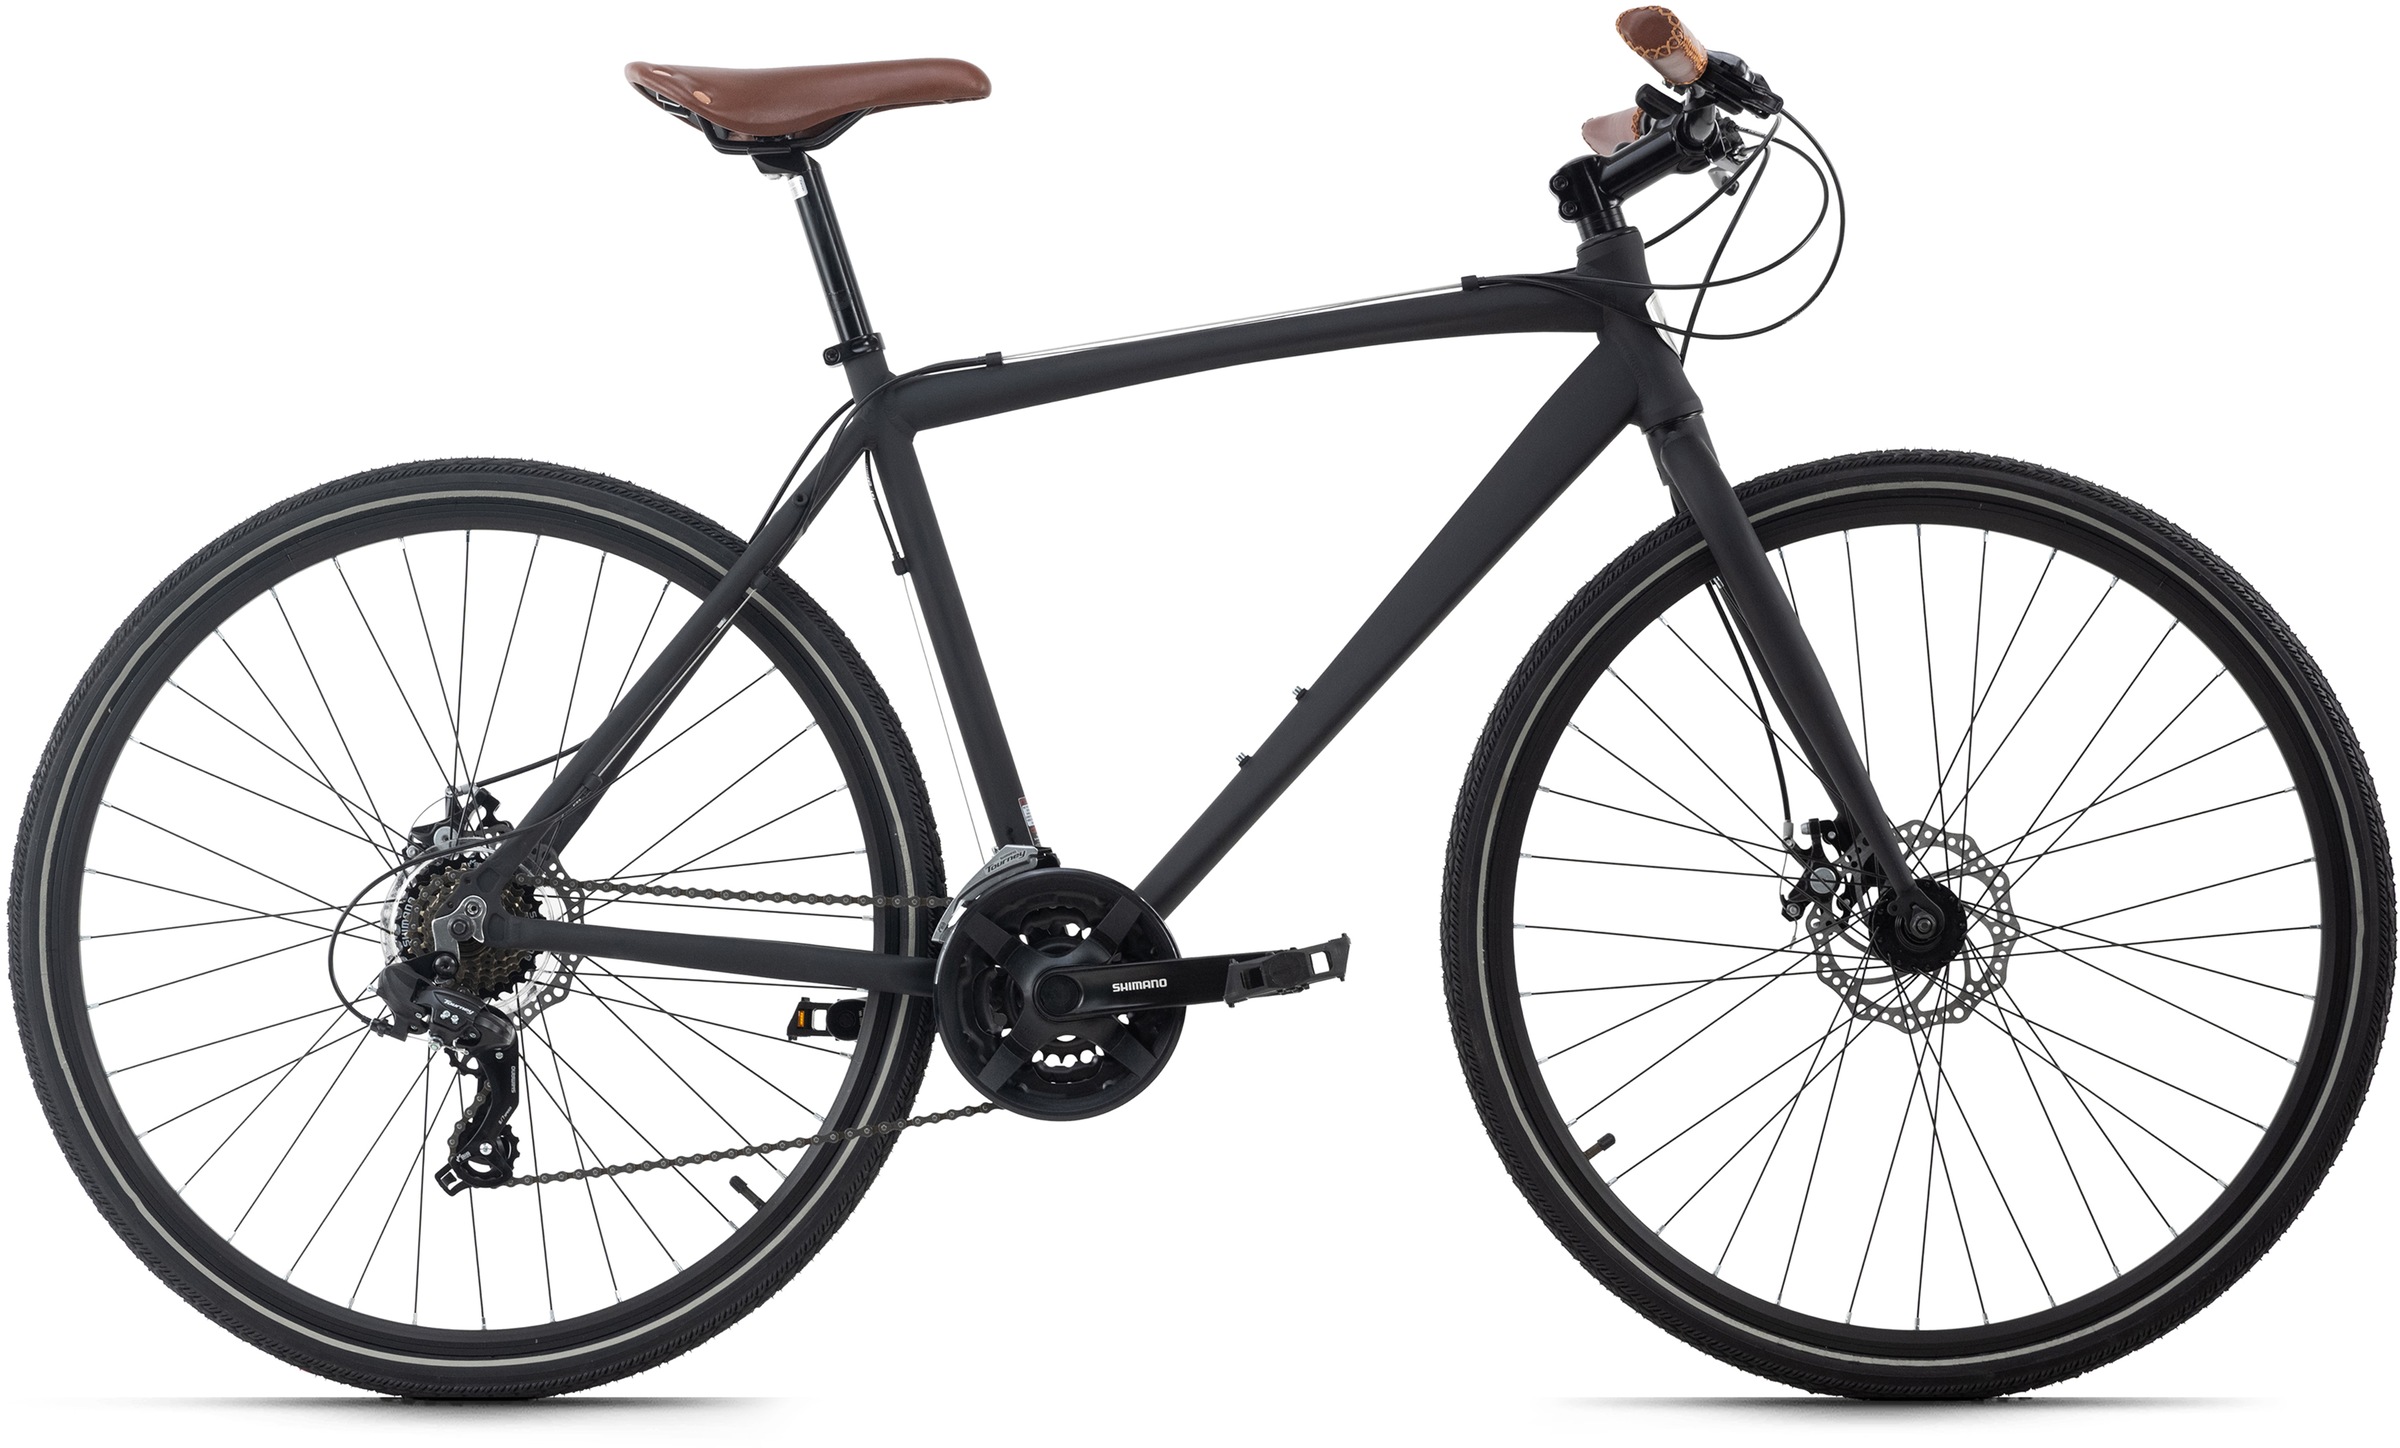 Urban-Bike ADORE "UBN77" Fahrräder Gr. 46 cm, 28 Zoll (71,12 cm), schwarz Fahrräder